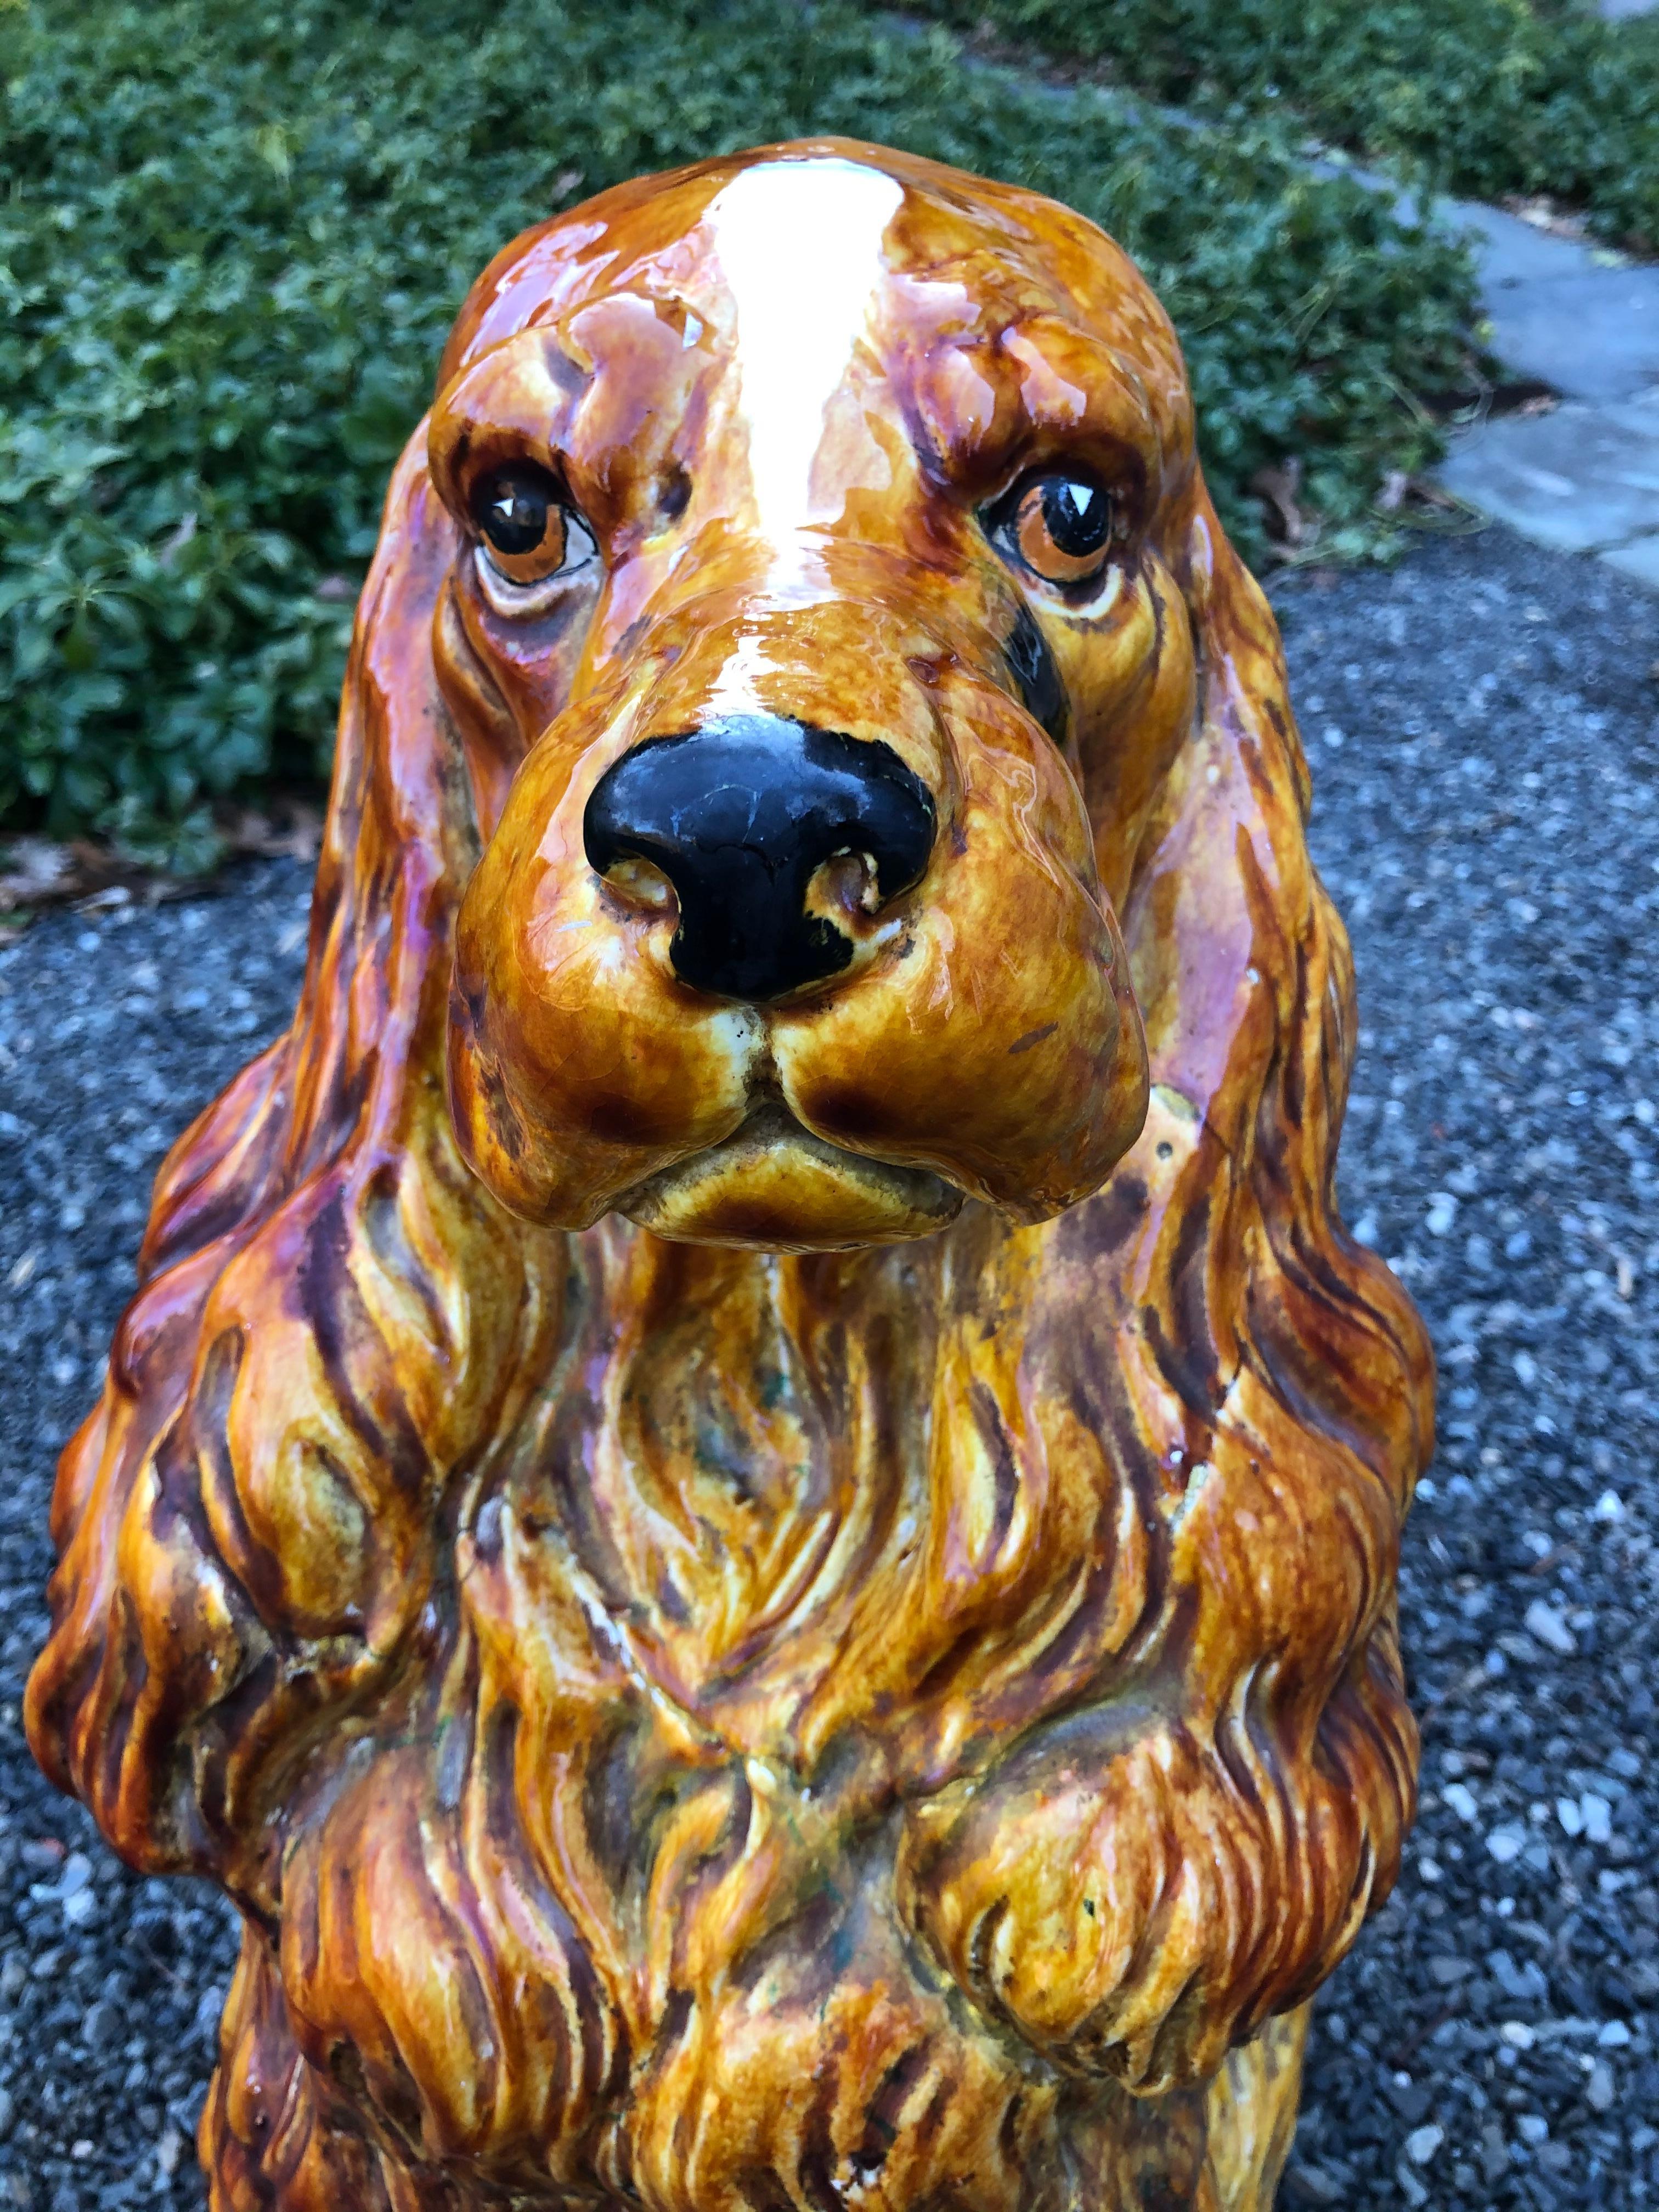 Charmante statuette en céramique, plus grande que nature, représentant un cocker anglais. Connu sous le nom de couleur foie, ce chien a une étoile blanche sur la tête. Son pelage est très réaliste et son expression est inestimable. Très lourd.